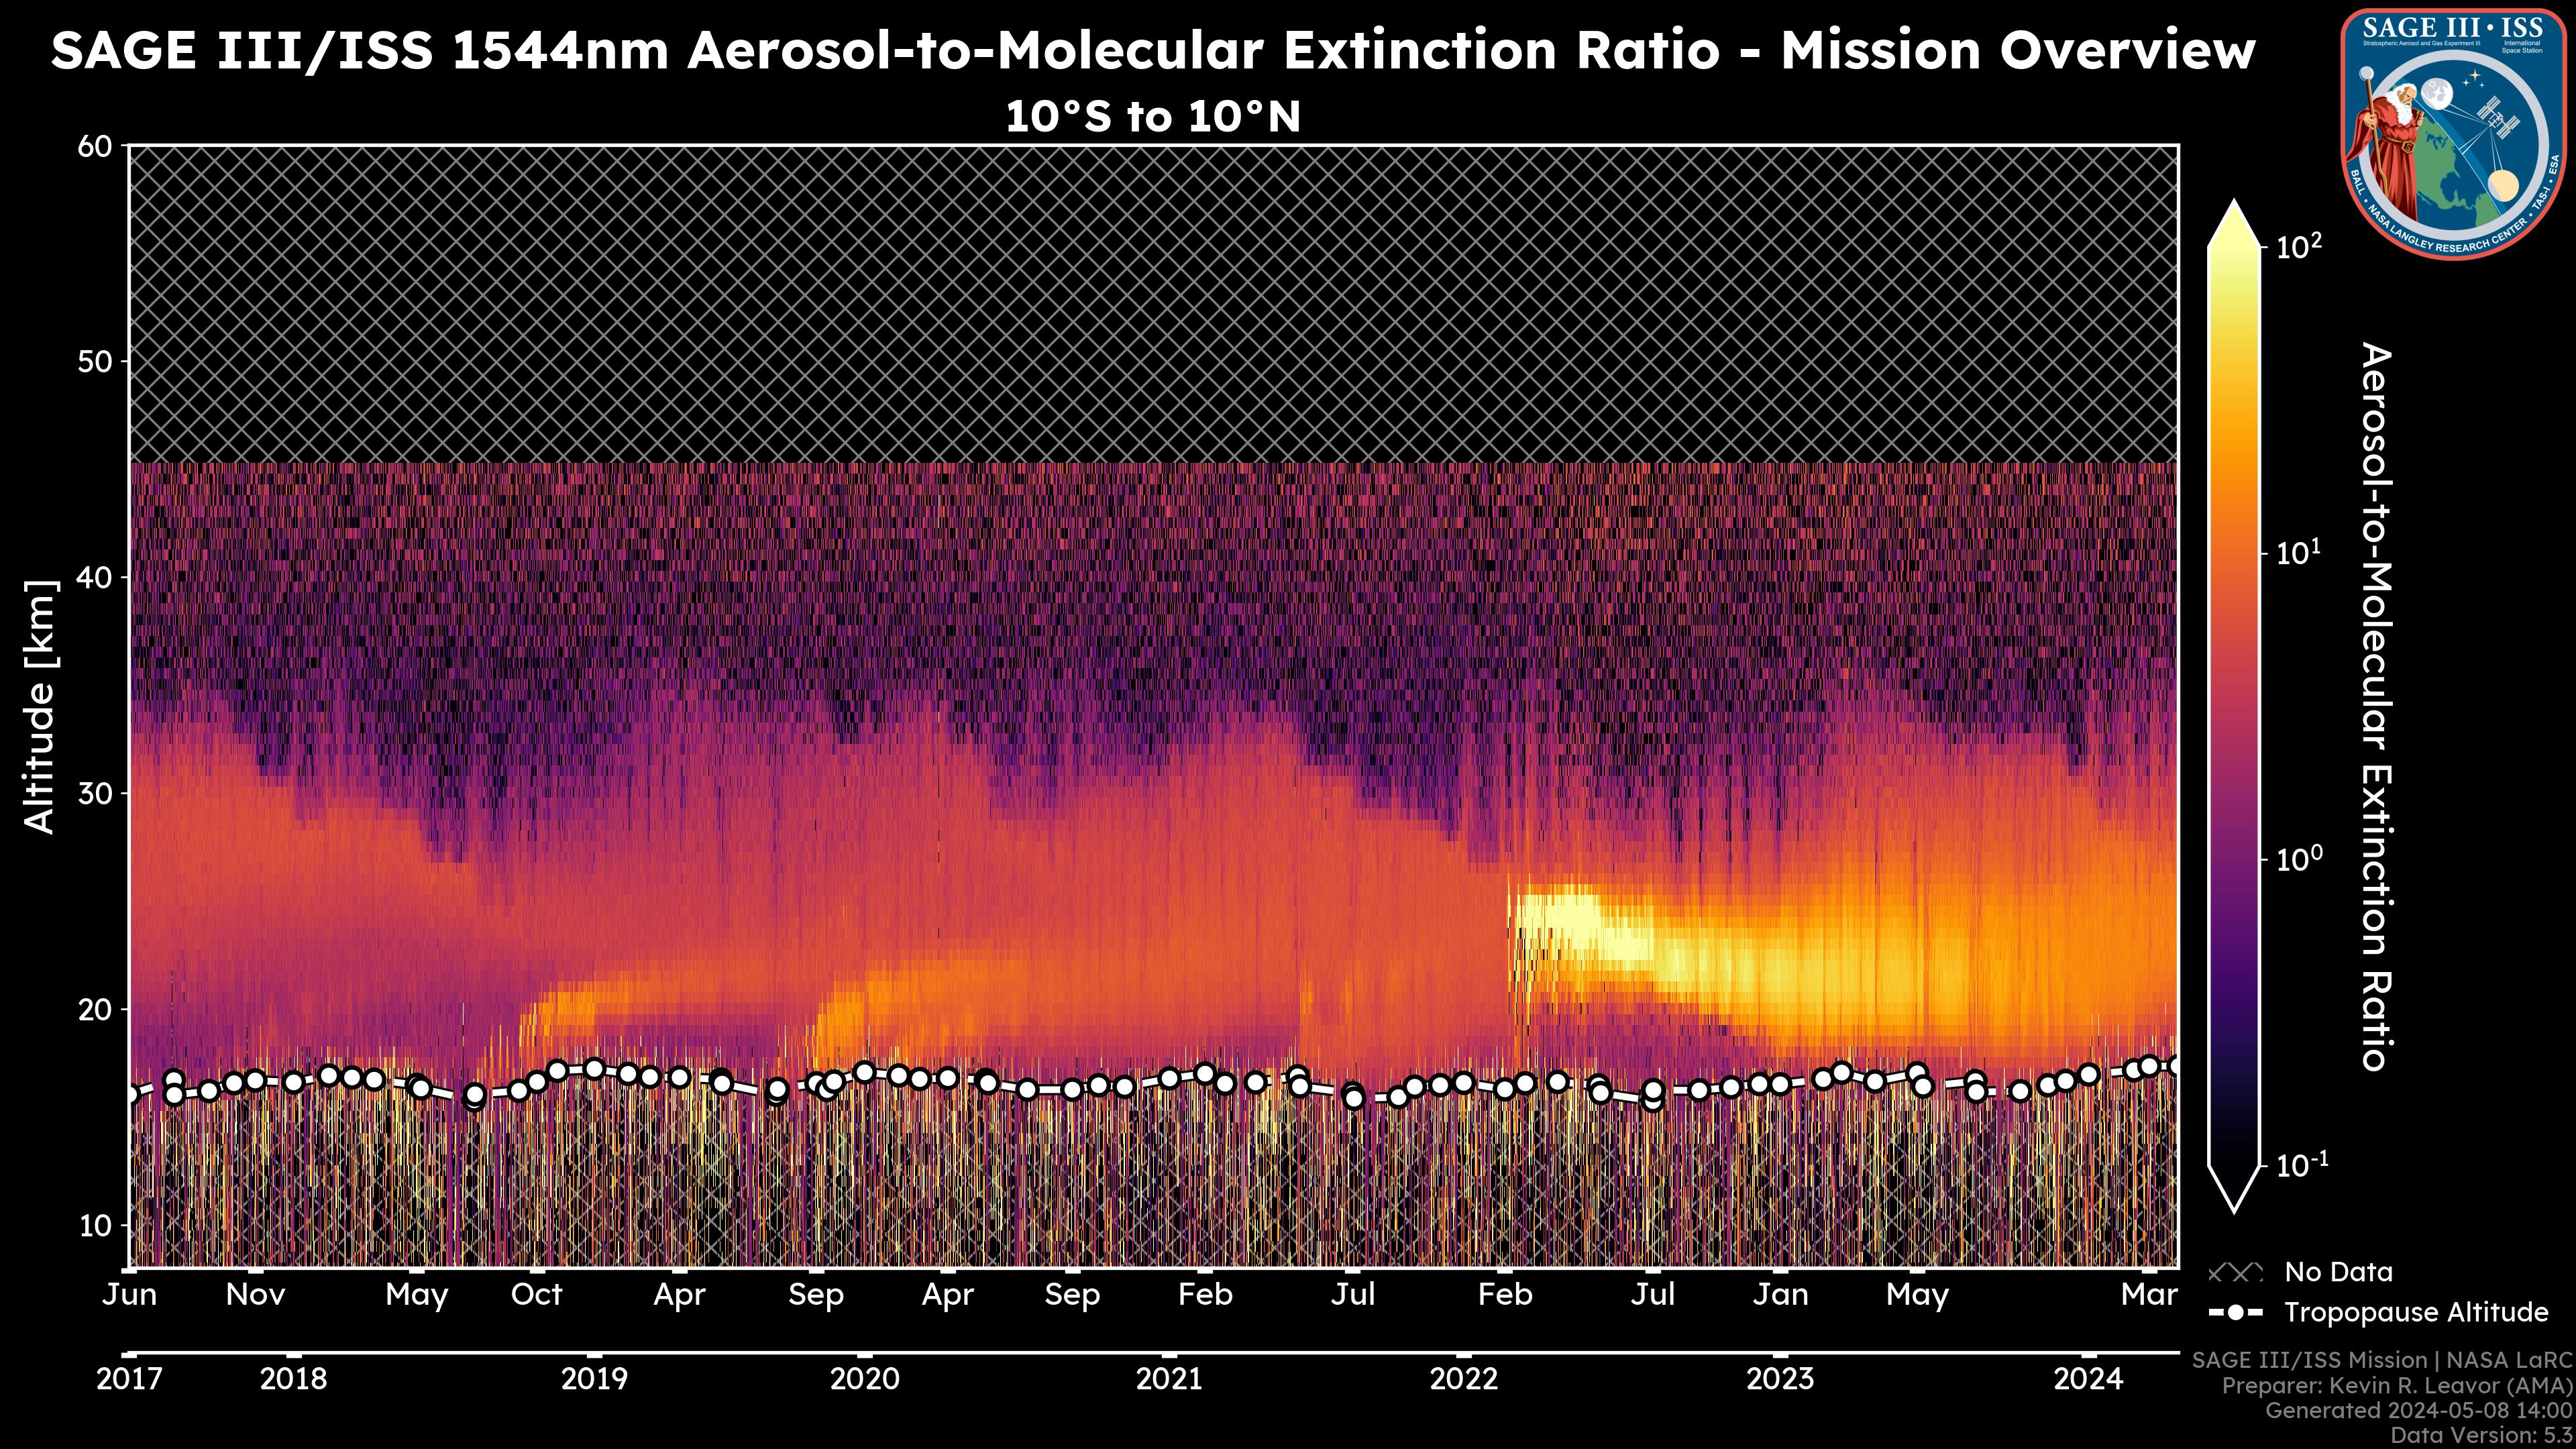 1544nm Aerosol-to-Molecular Extinction Ratio